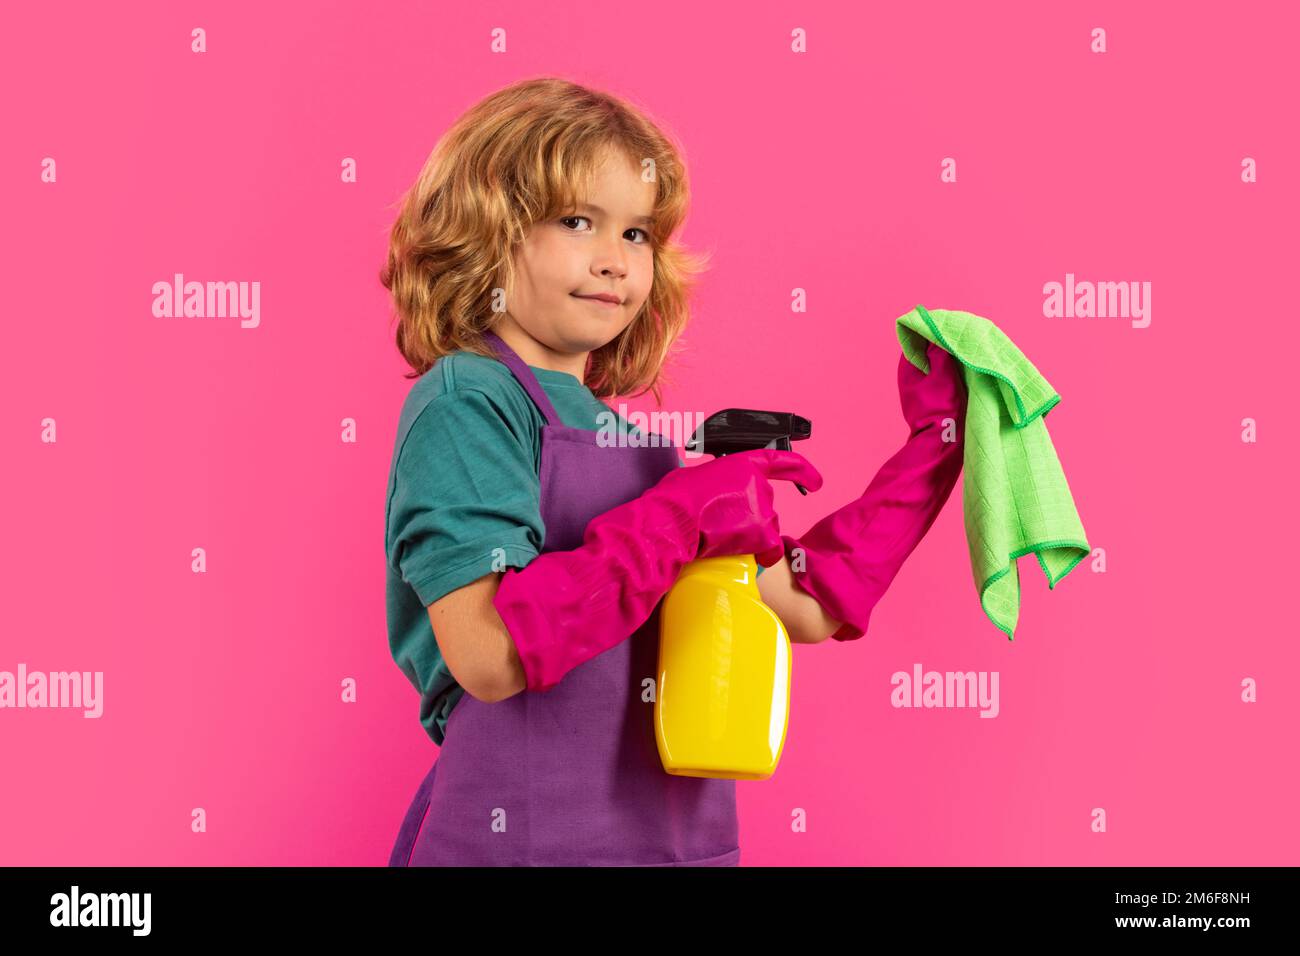 Un enfant nettoie à la maison. Nettoyage des enfants à l'aide d'une vadrouille pour faciliter les tâches ménagères. Petit garçon mignon balayant et nettoyant, isolé sur fond de couleur studio Banque D'Images